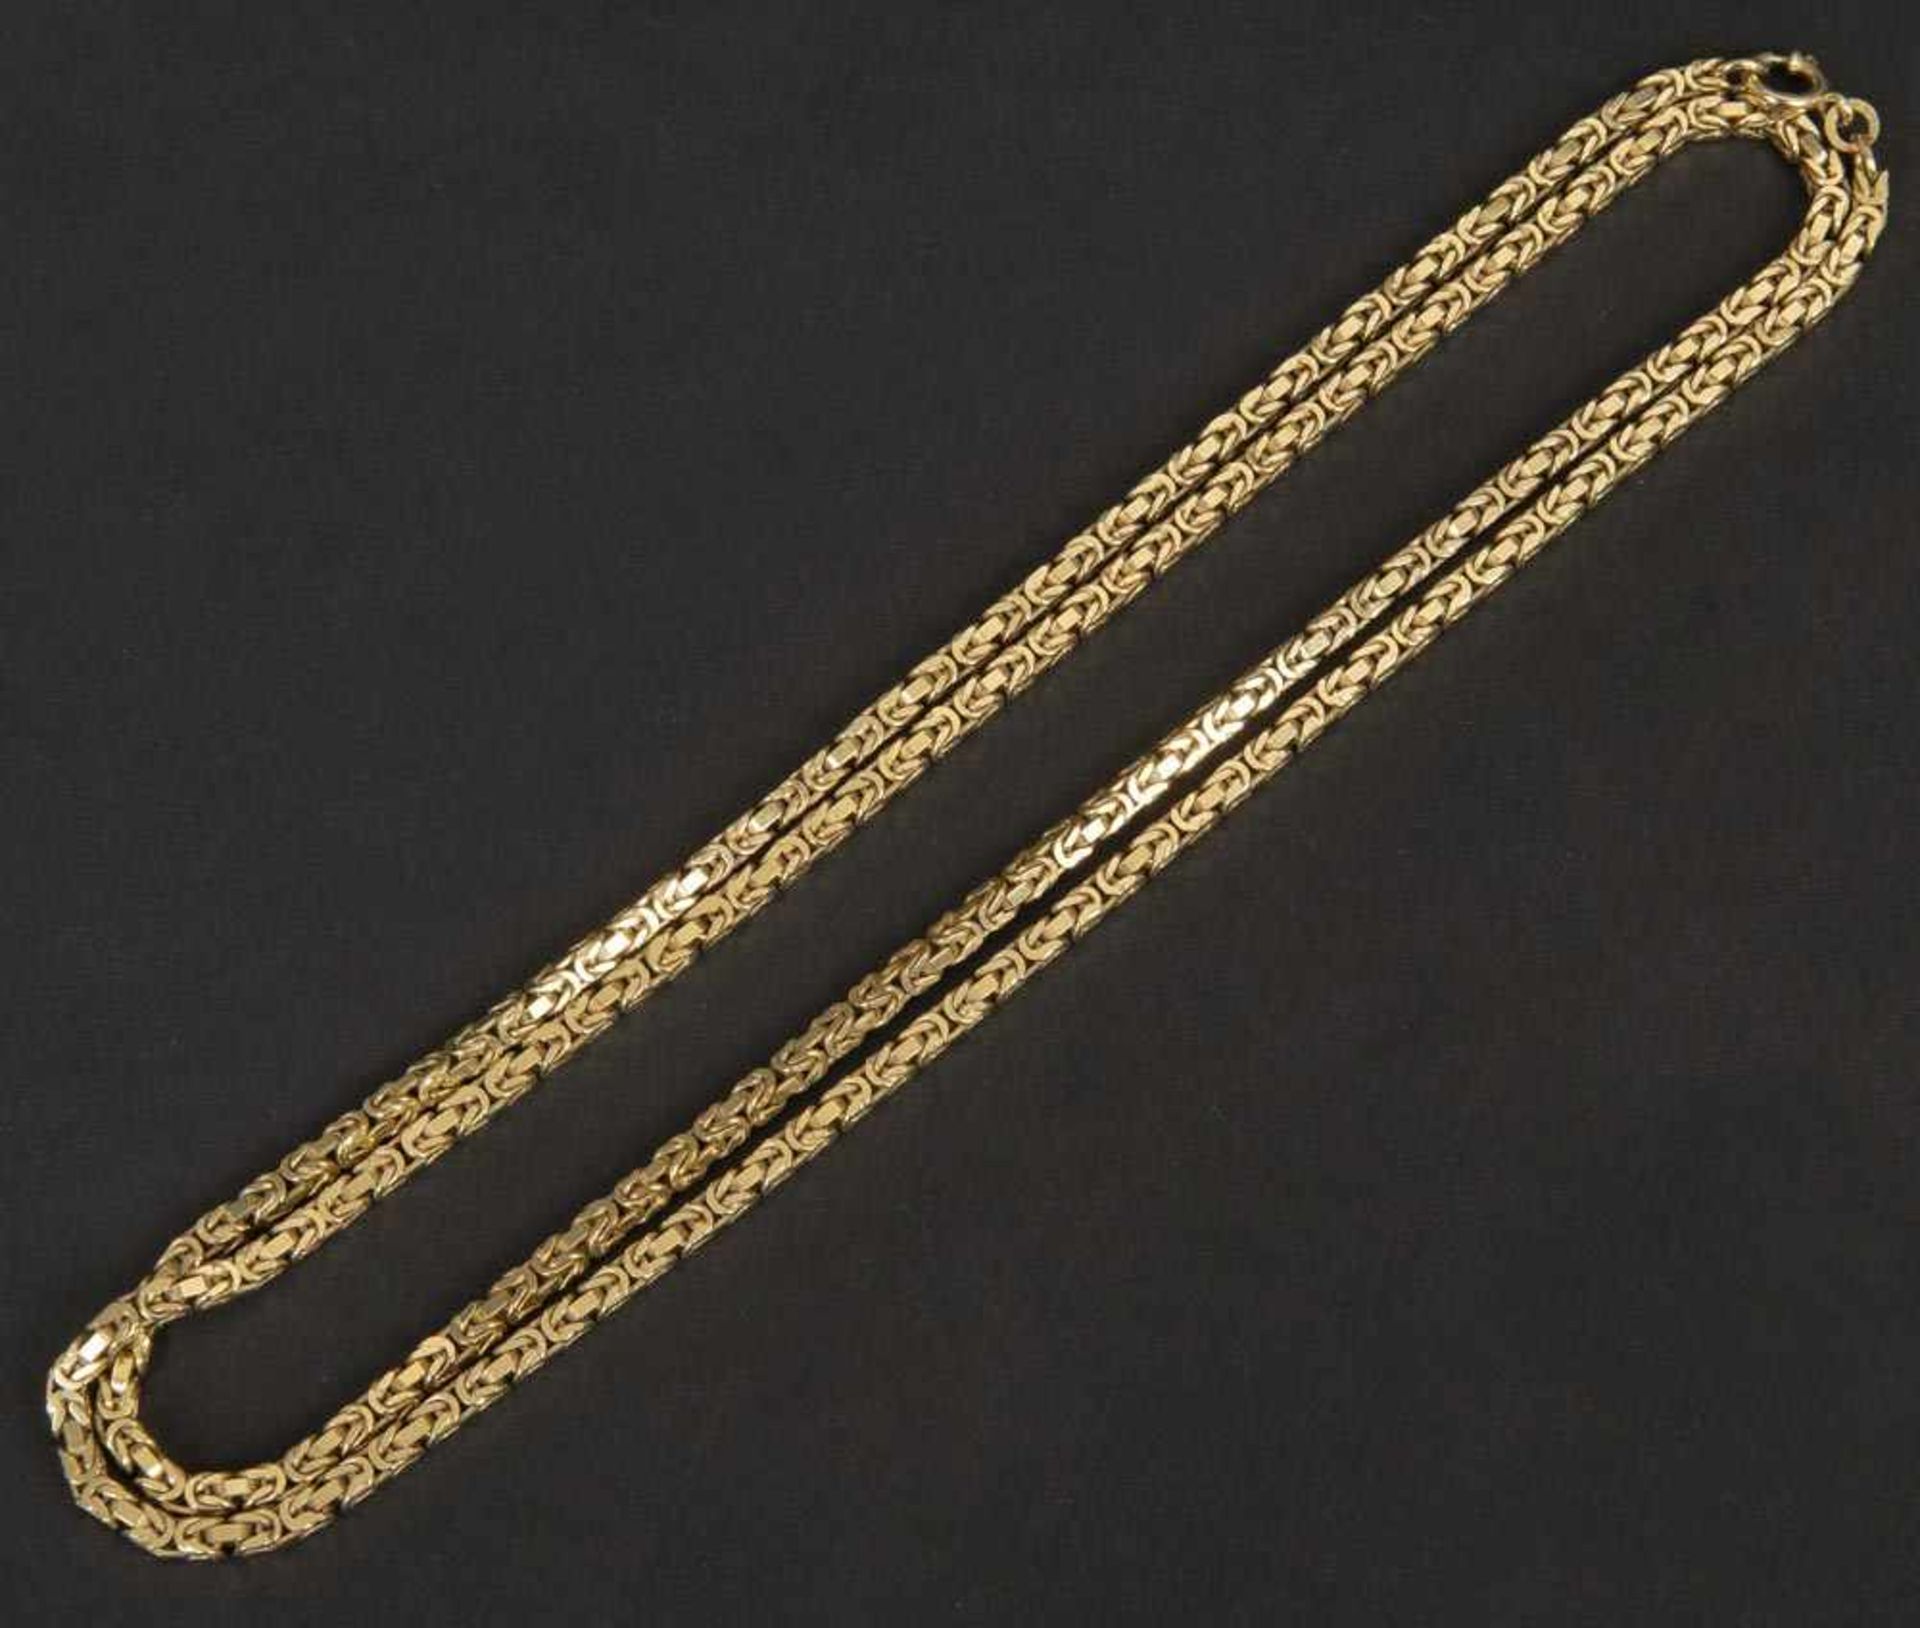 Halskette. 8 ct Gelbgold, ca. 43 g, L=80 cm.Halskette. 8 ct Gelbgold, ca. 43 g, L=80 cm.